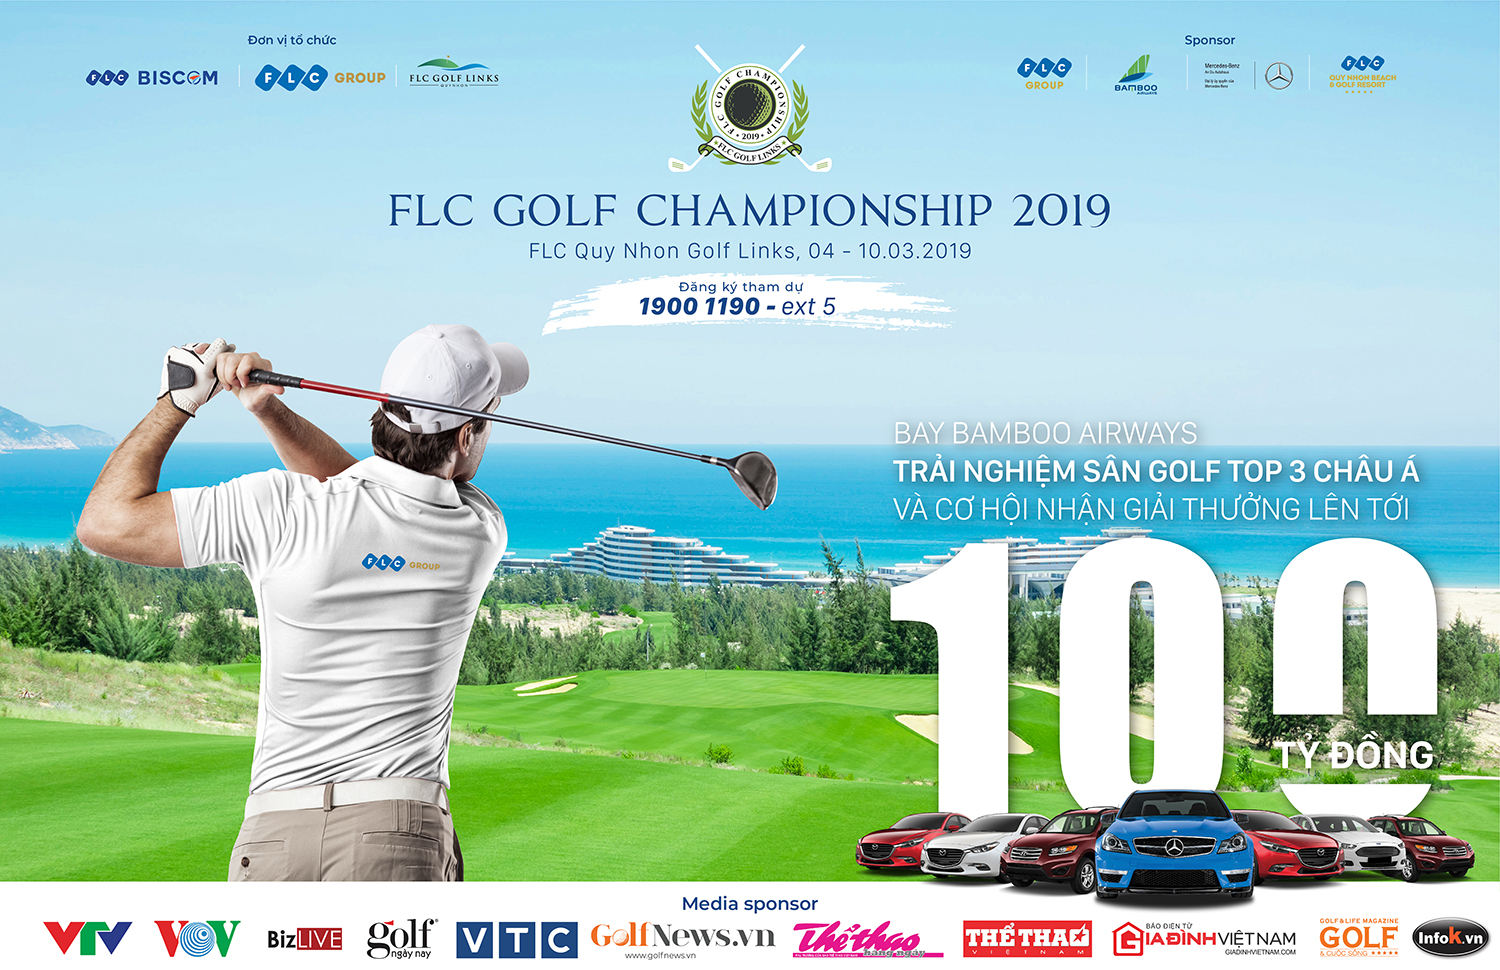 Gần 2.000 golfers sẽ cùng bay Bamboo Airways và săn HIO 'khủng' tại FLC Golf Championship 2019